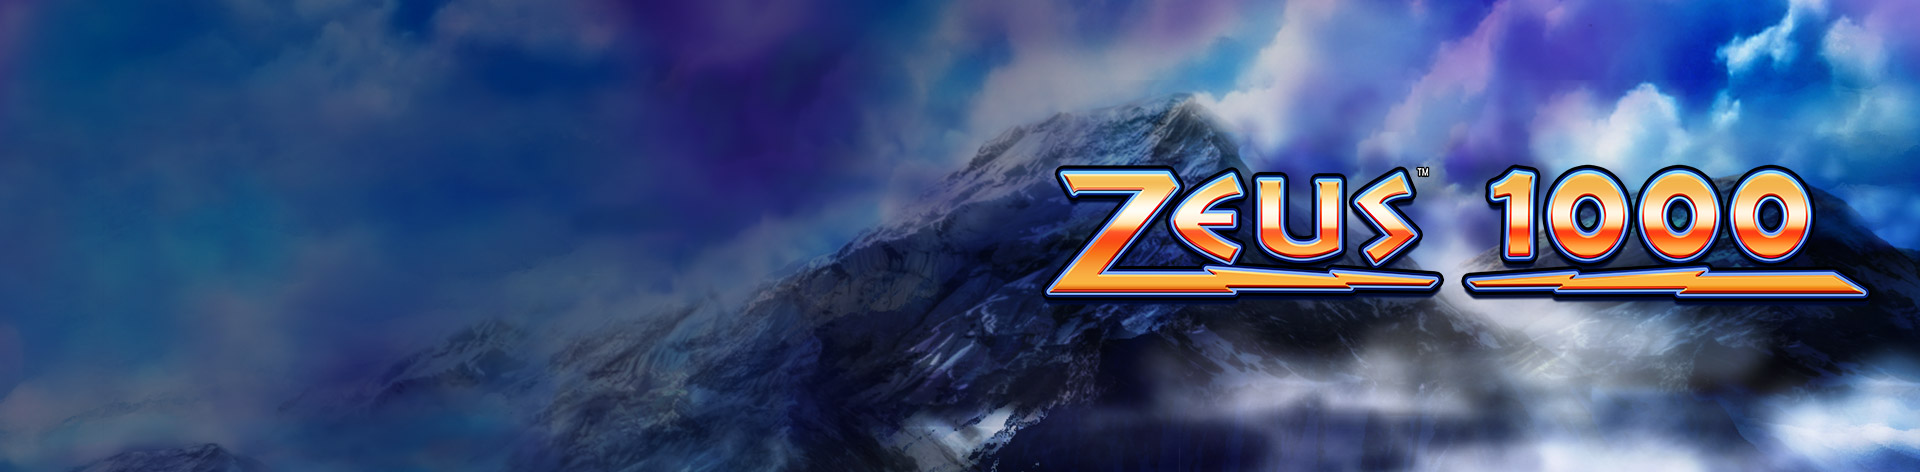 Zeus 1000 rtp download